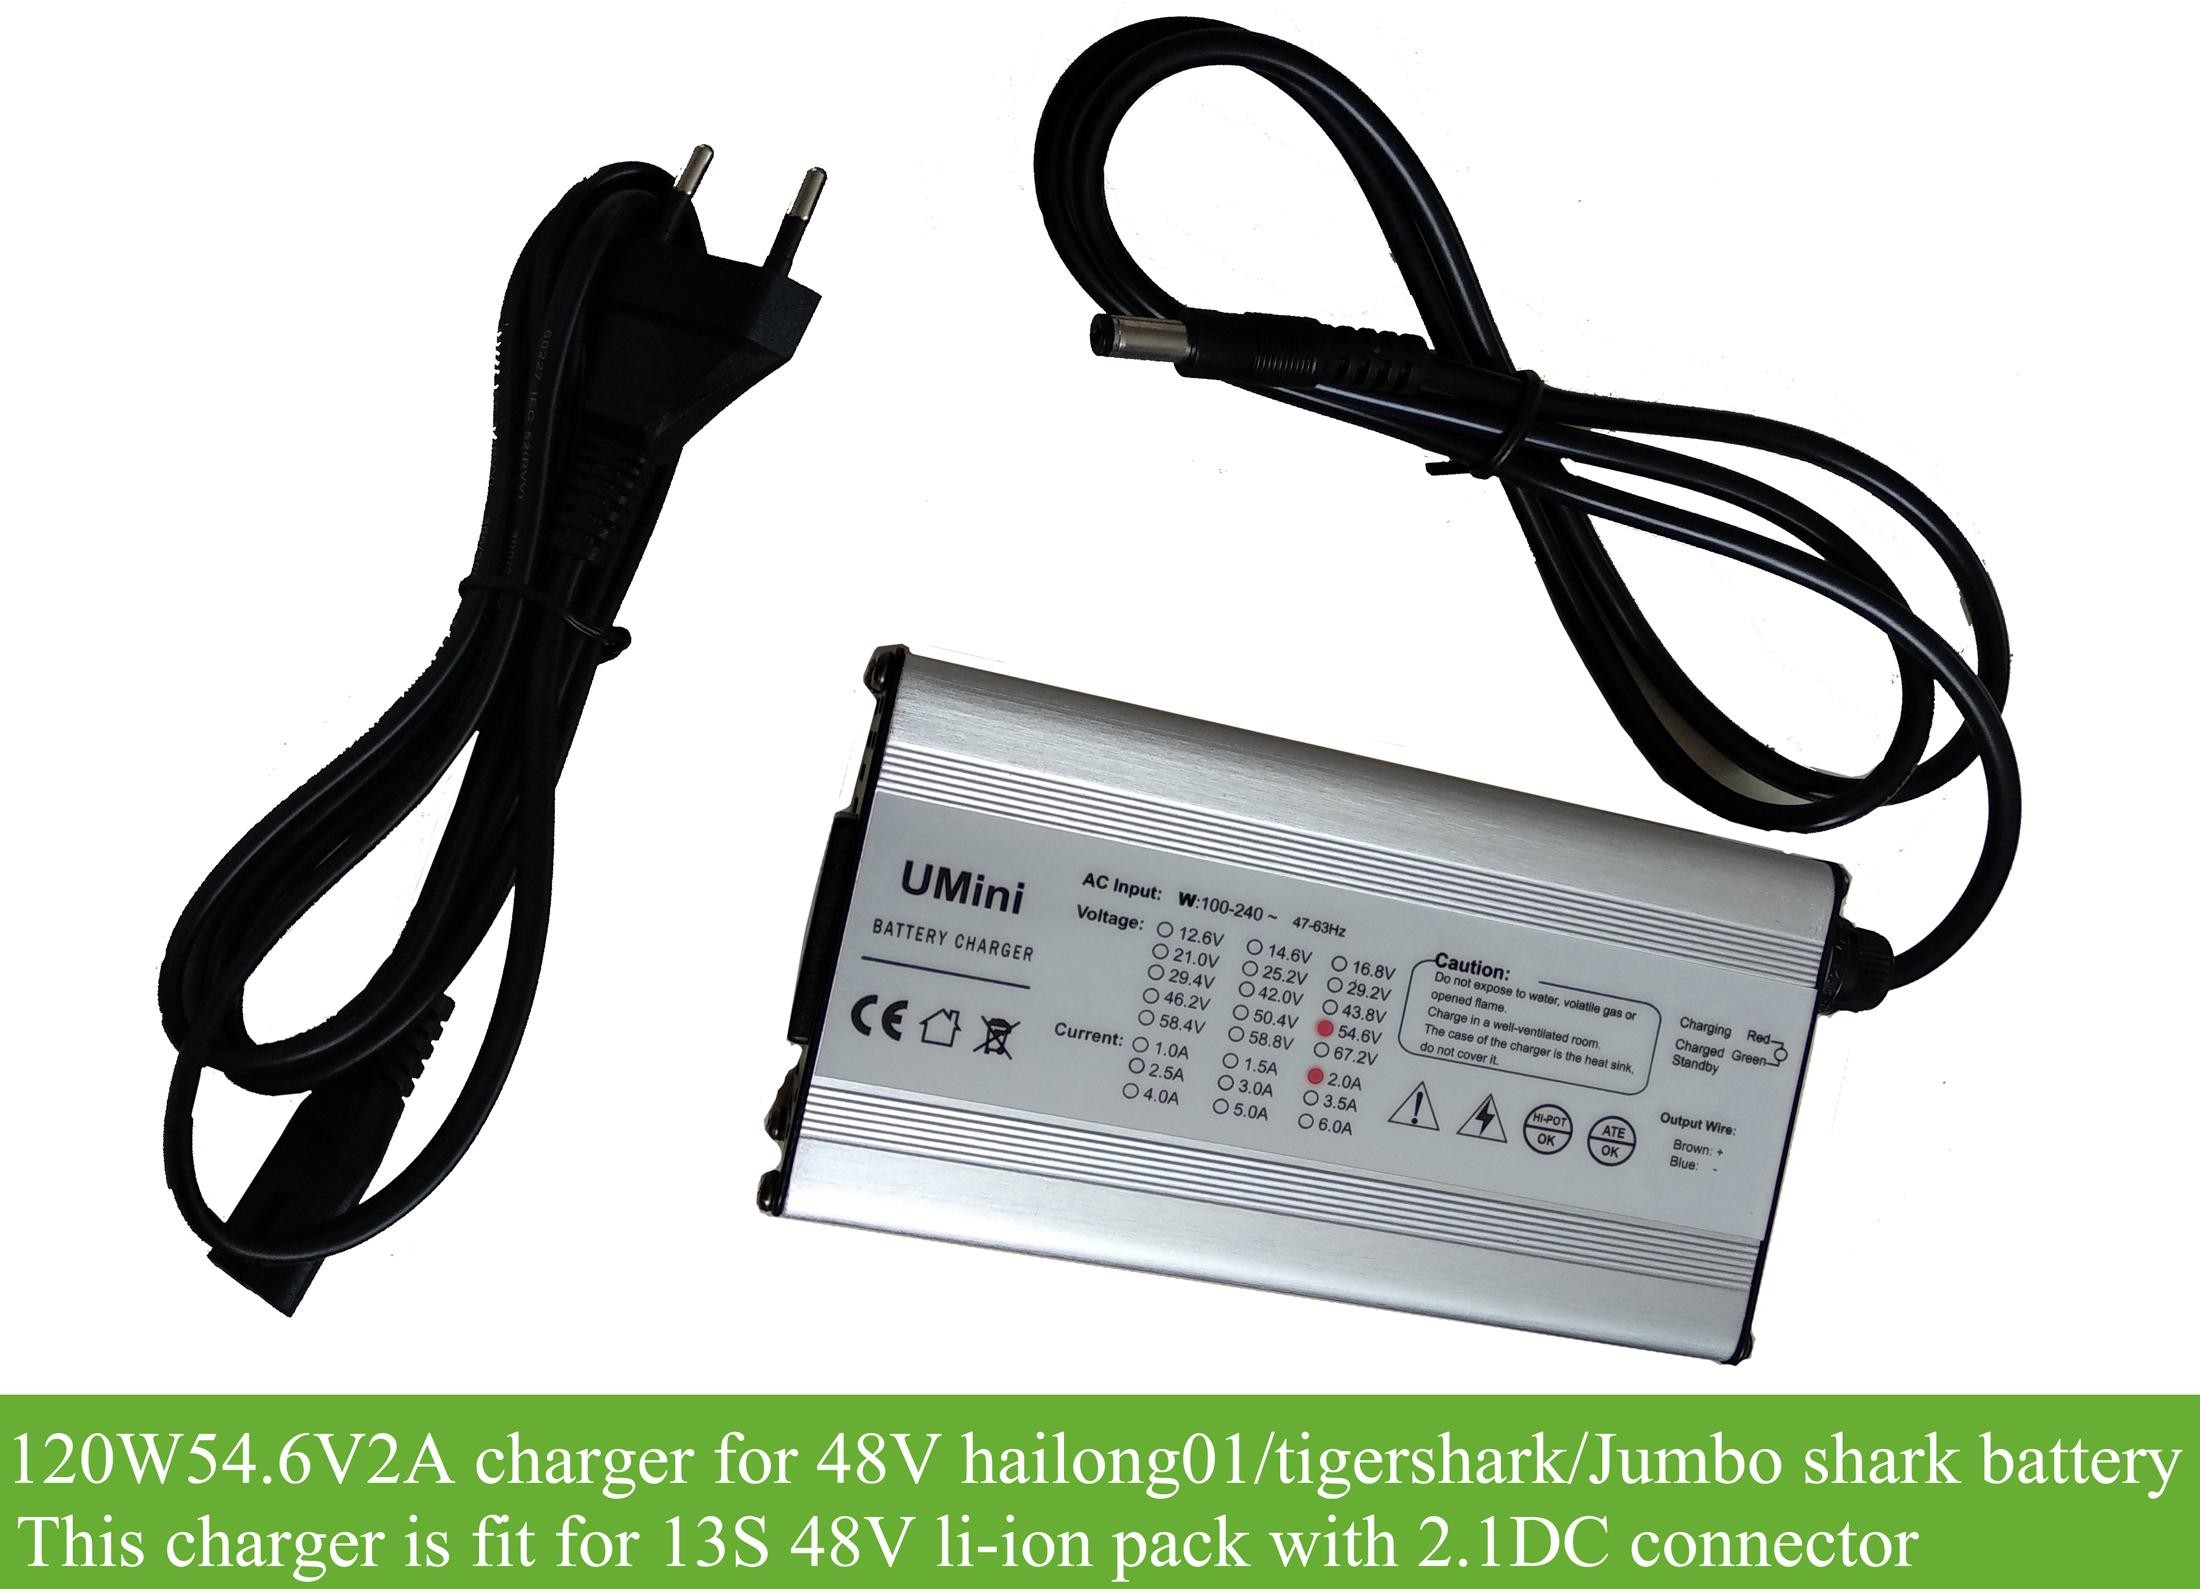 https://www.greenbikekit.com/media/catalog/product/cache/1/thumbnail/9df78eab33525d08d6e5fb8d27136e95/1/2/120w-48v-2a-alloy-charger-for-hailong01-tigershark-jumboshark-downtube-battery.jpg